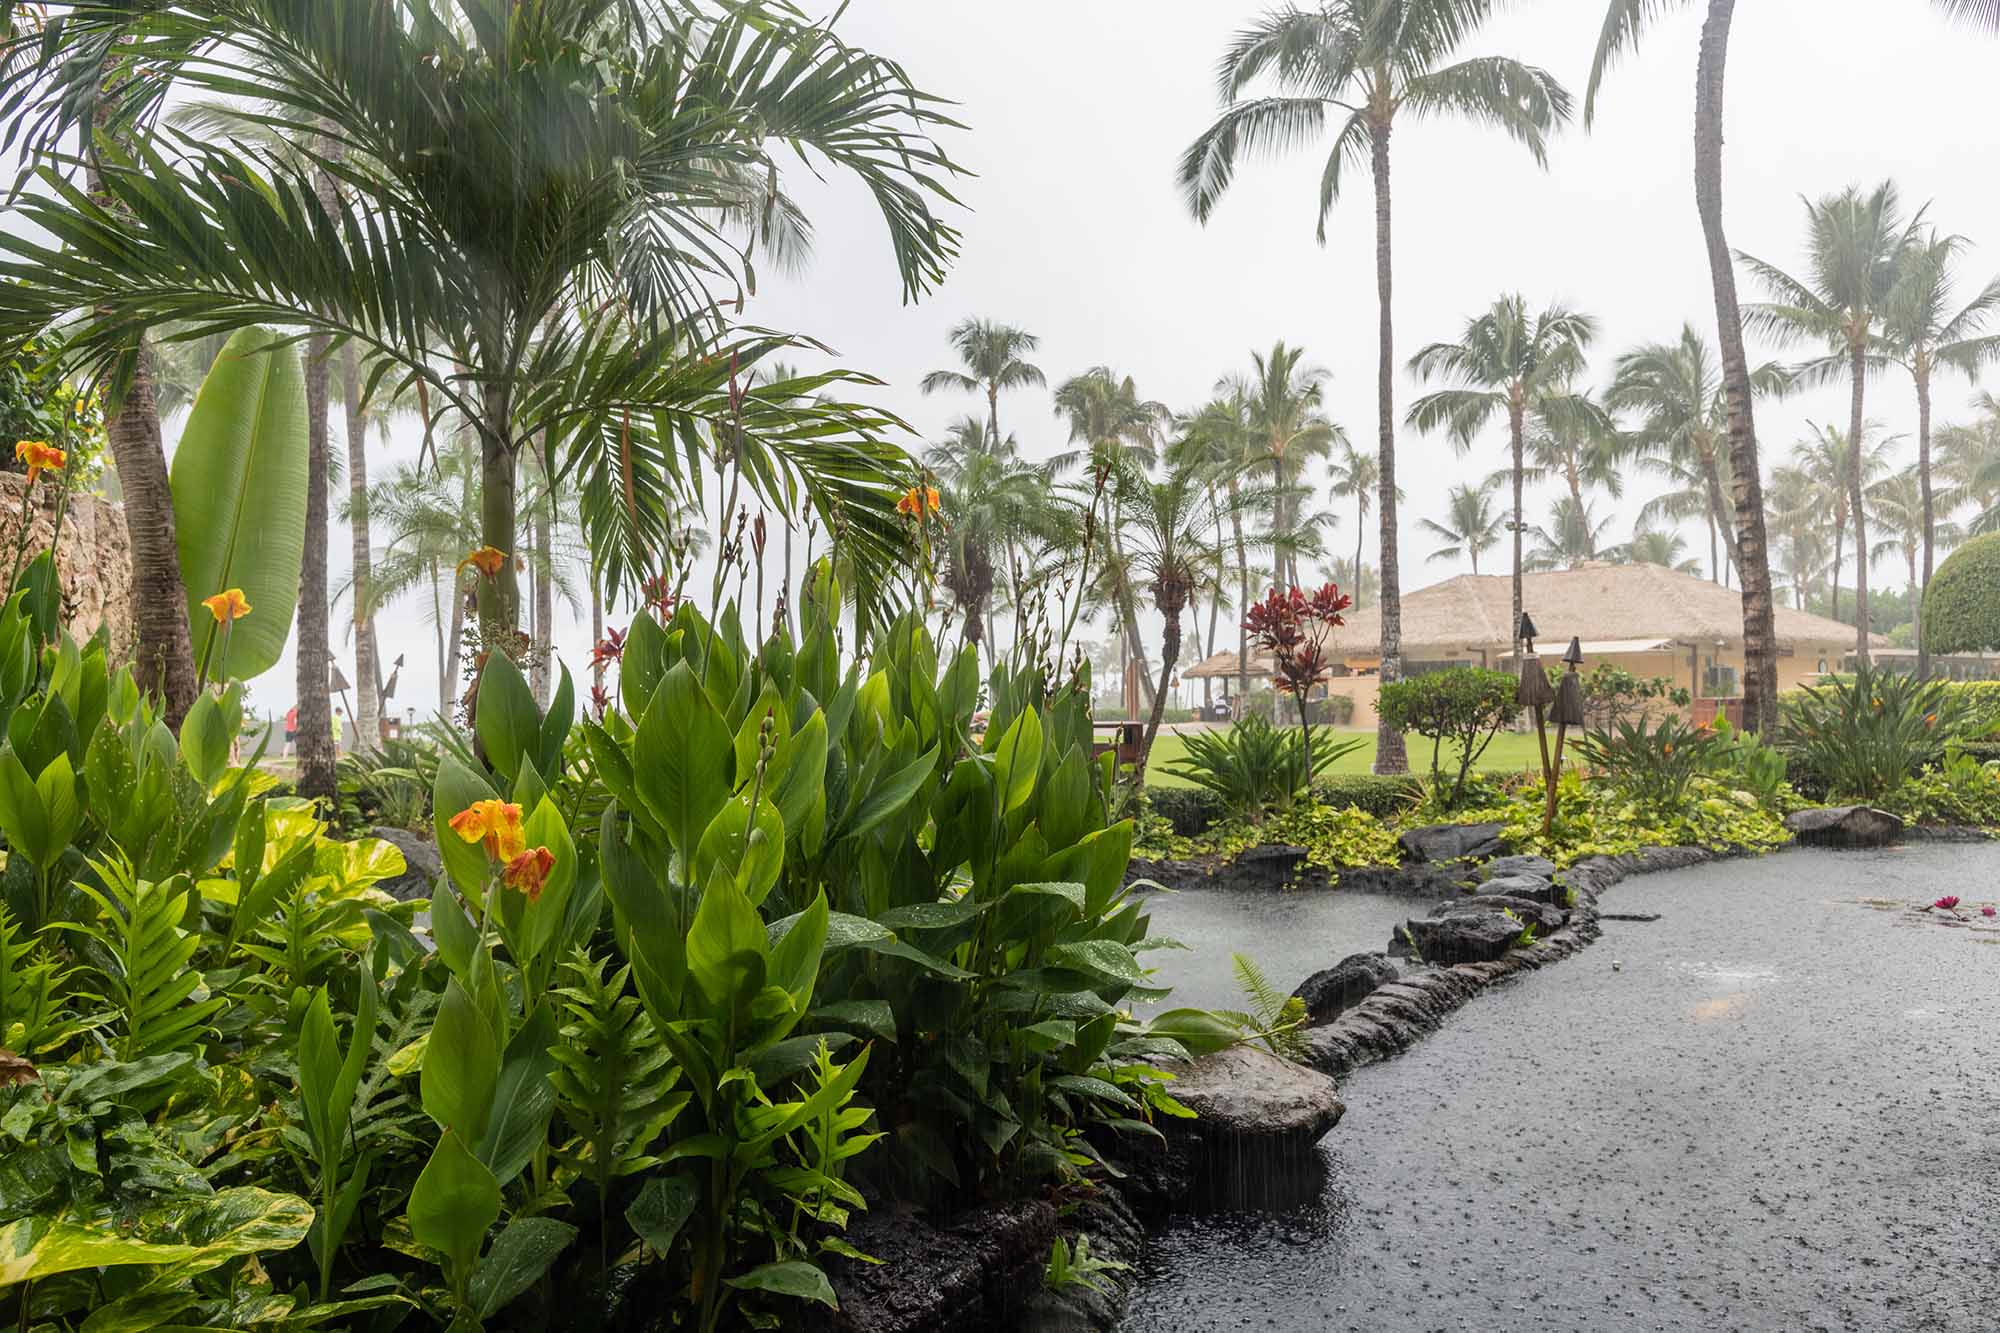 lluvia en hawaii, uno de los estados más húmedos de ee.uu.